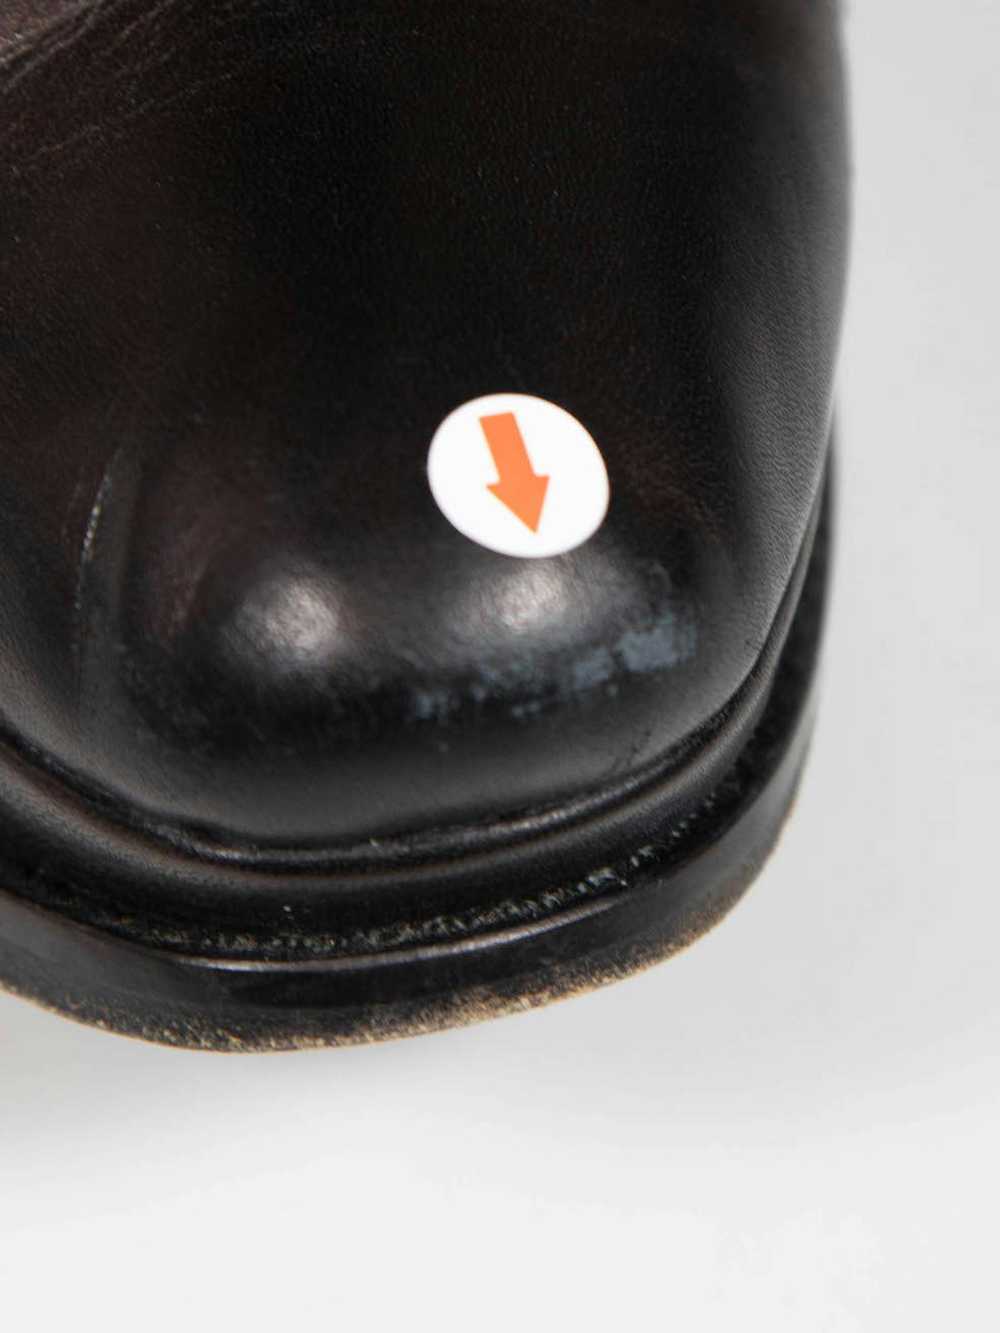 Yohji Yamamoto Black Leather Laced Platform Boots - image 5